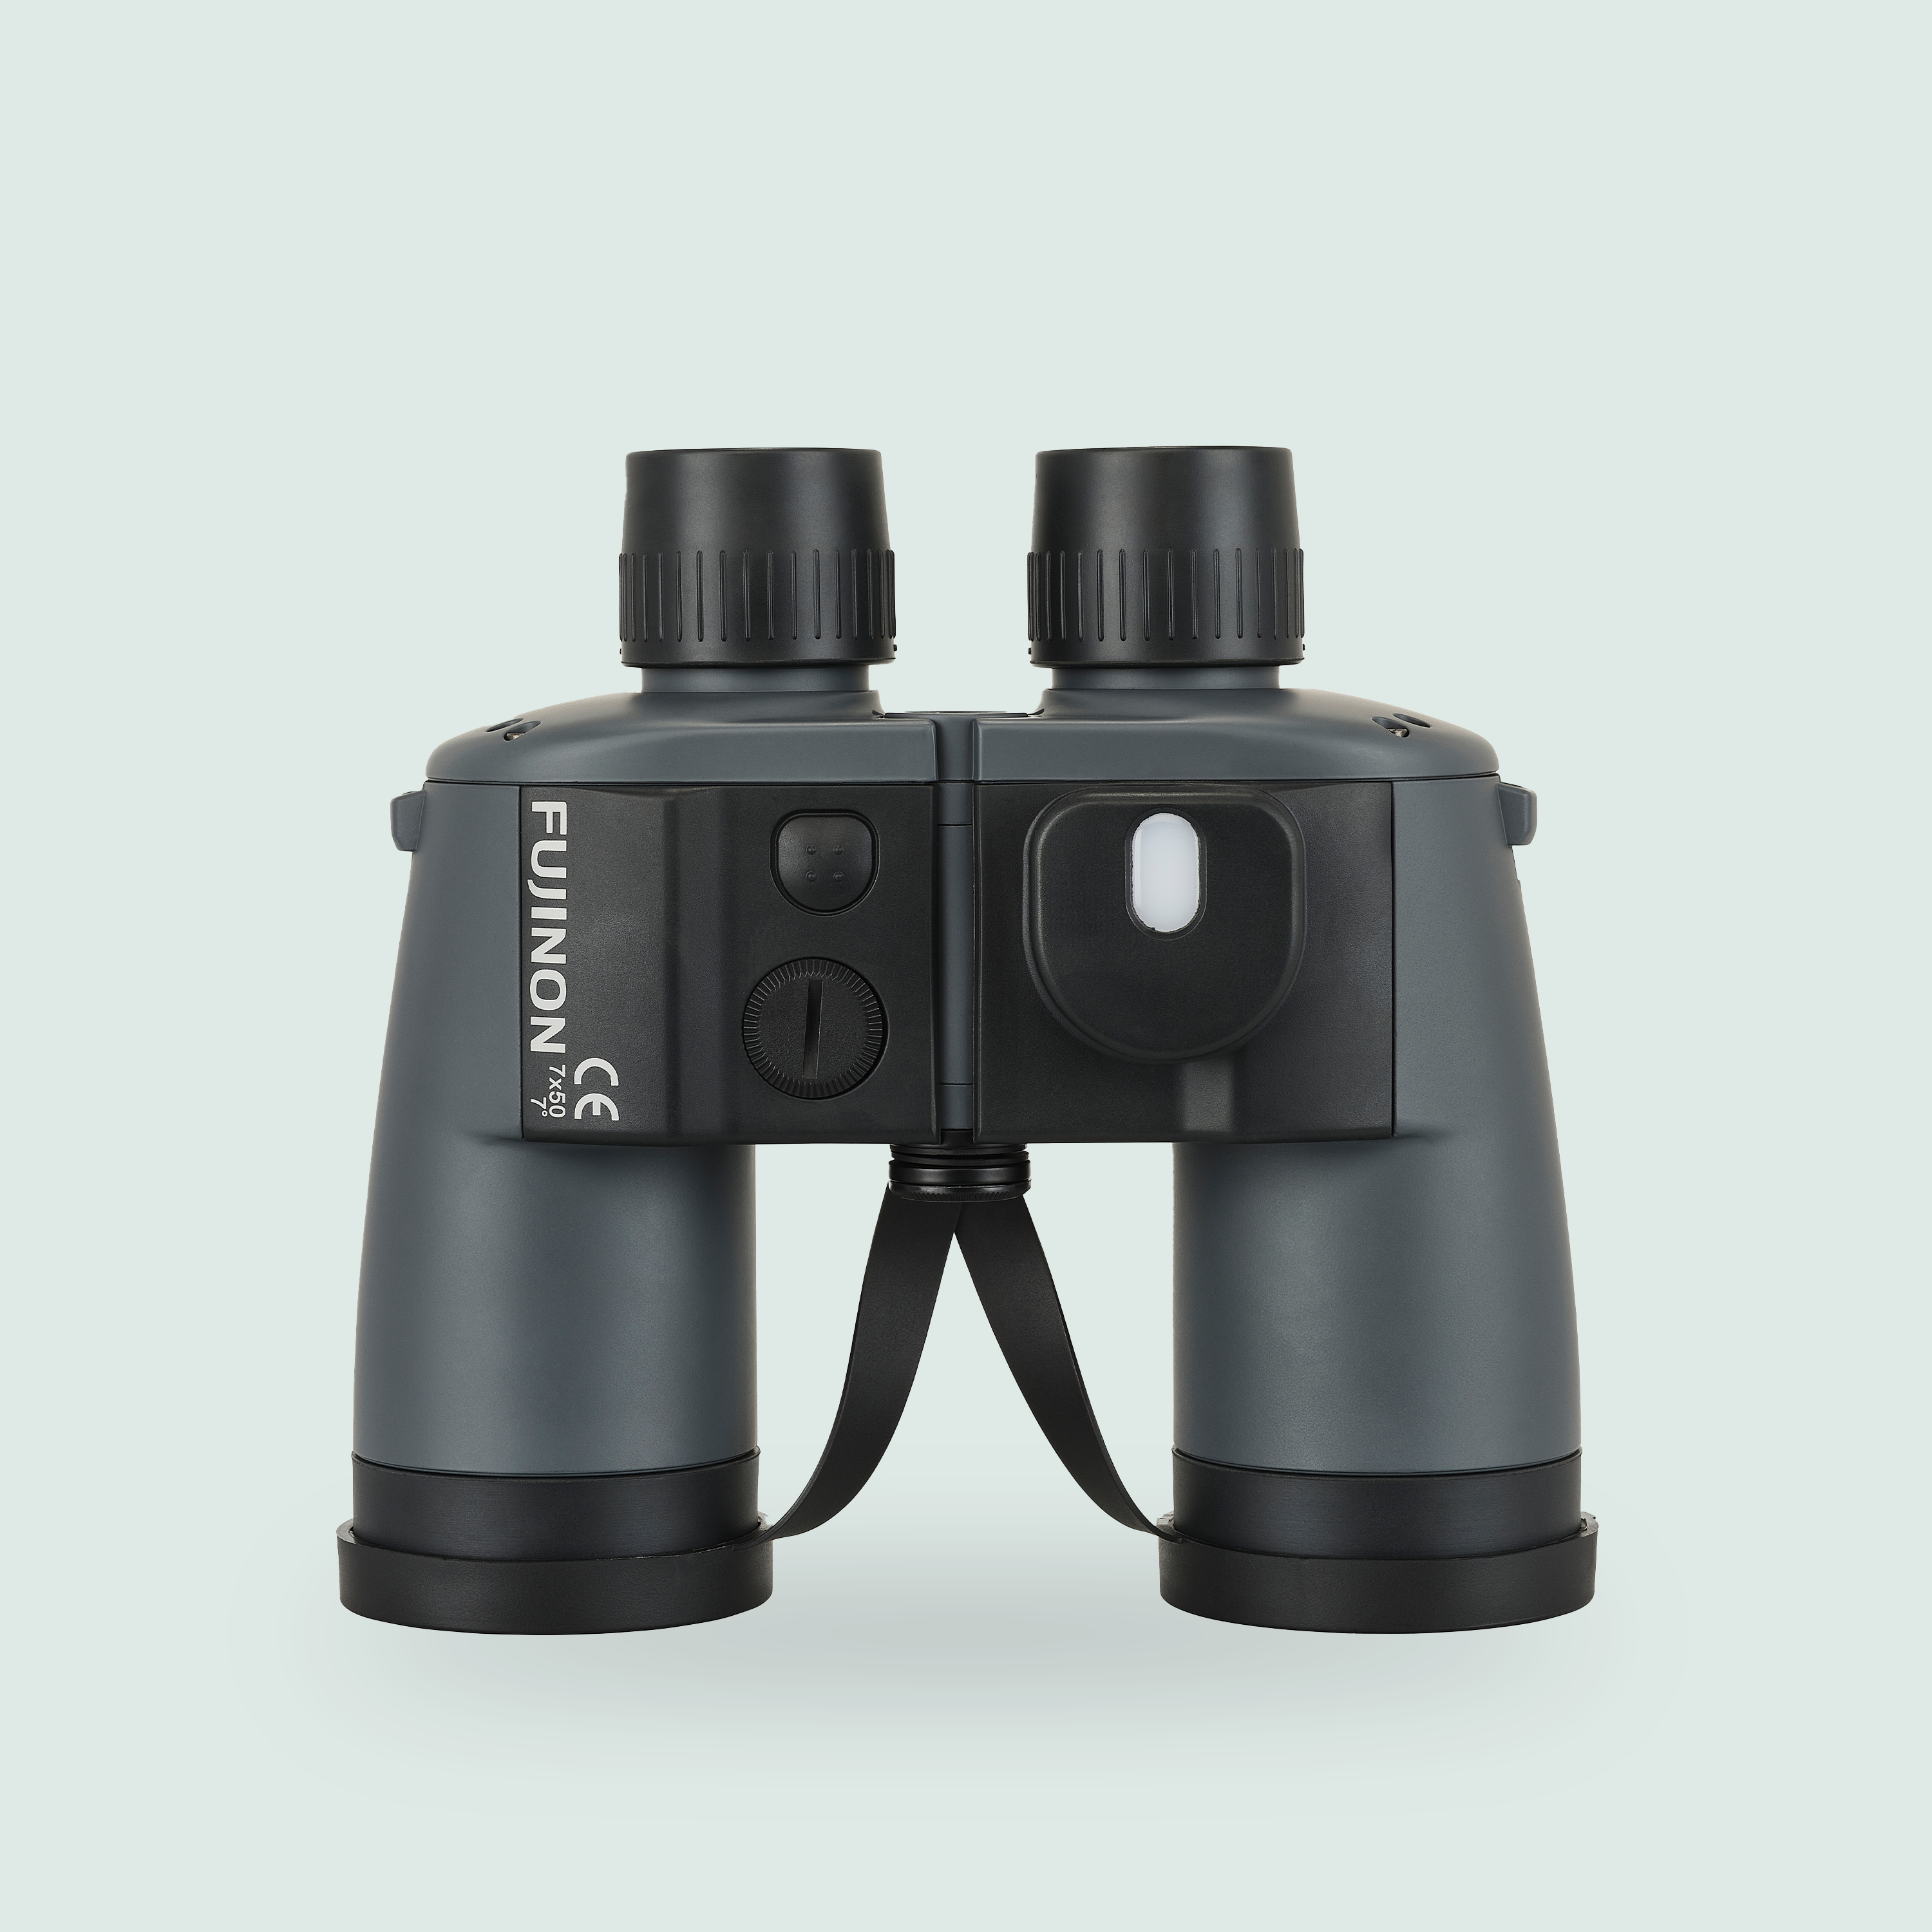 7X50 WPCXL Mariner Binoculars with compass